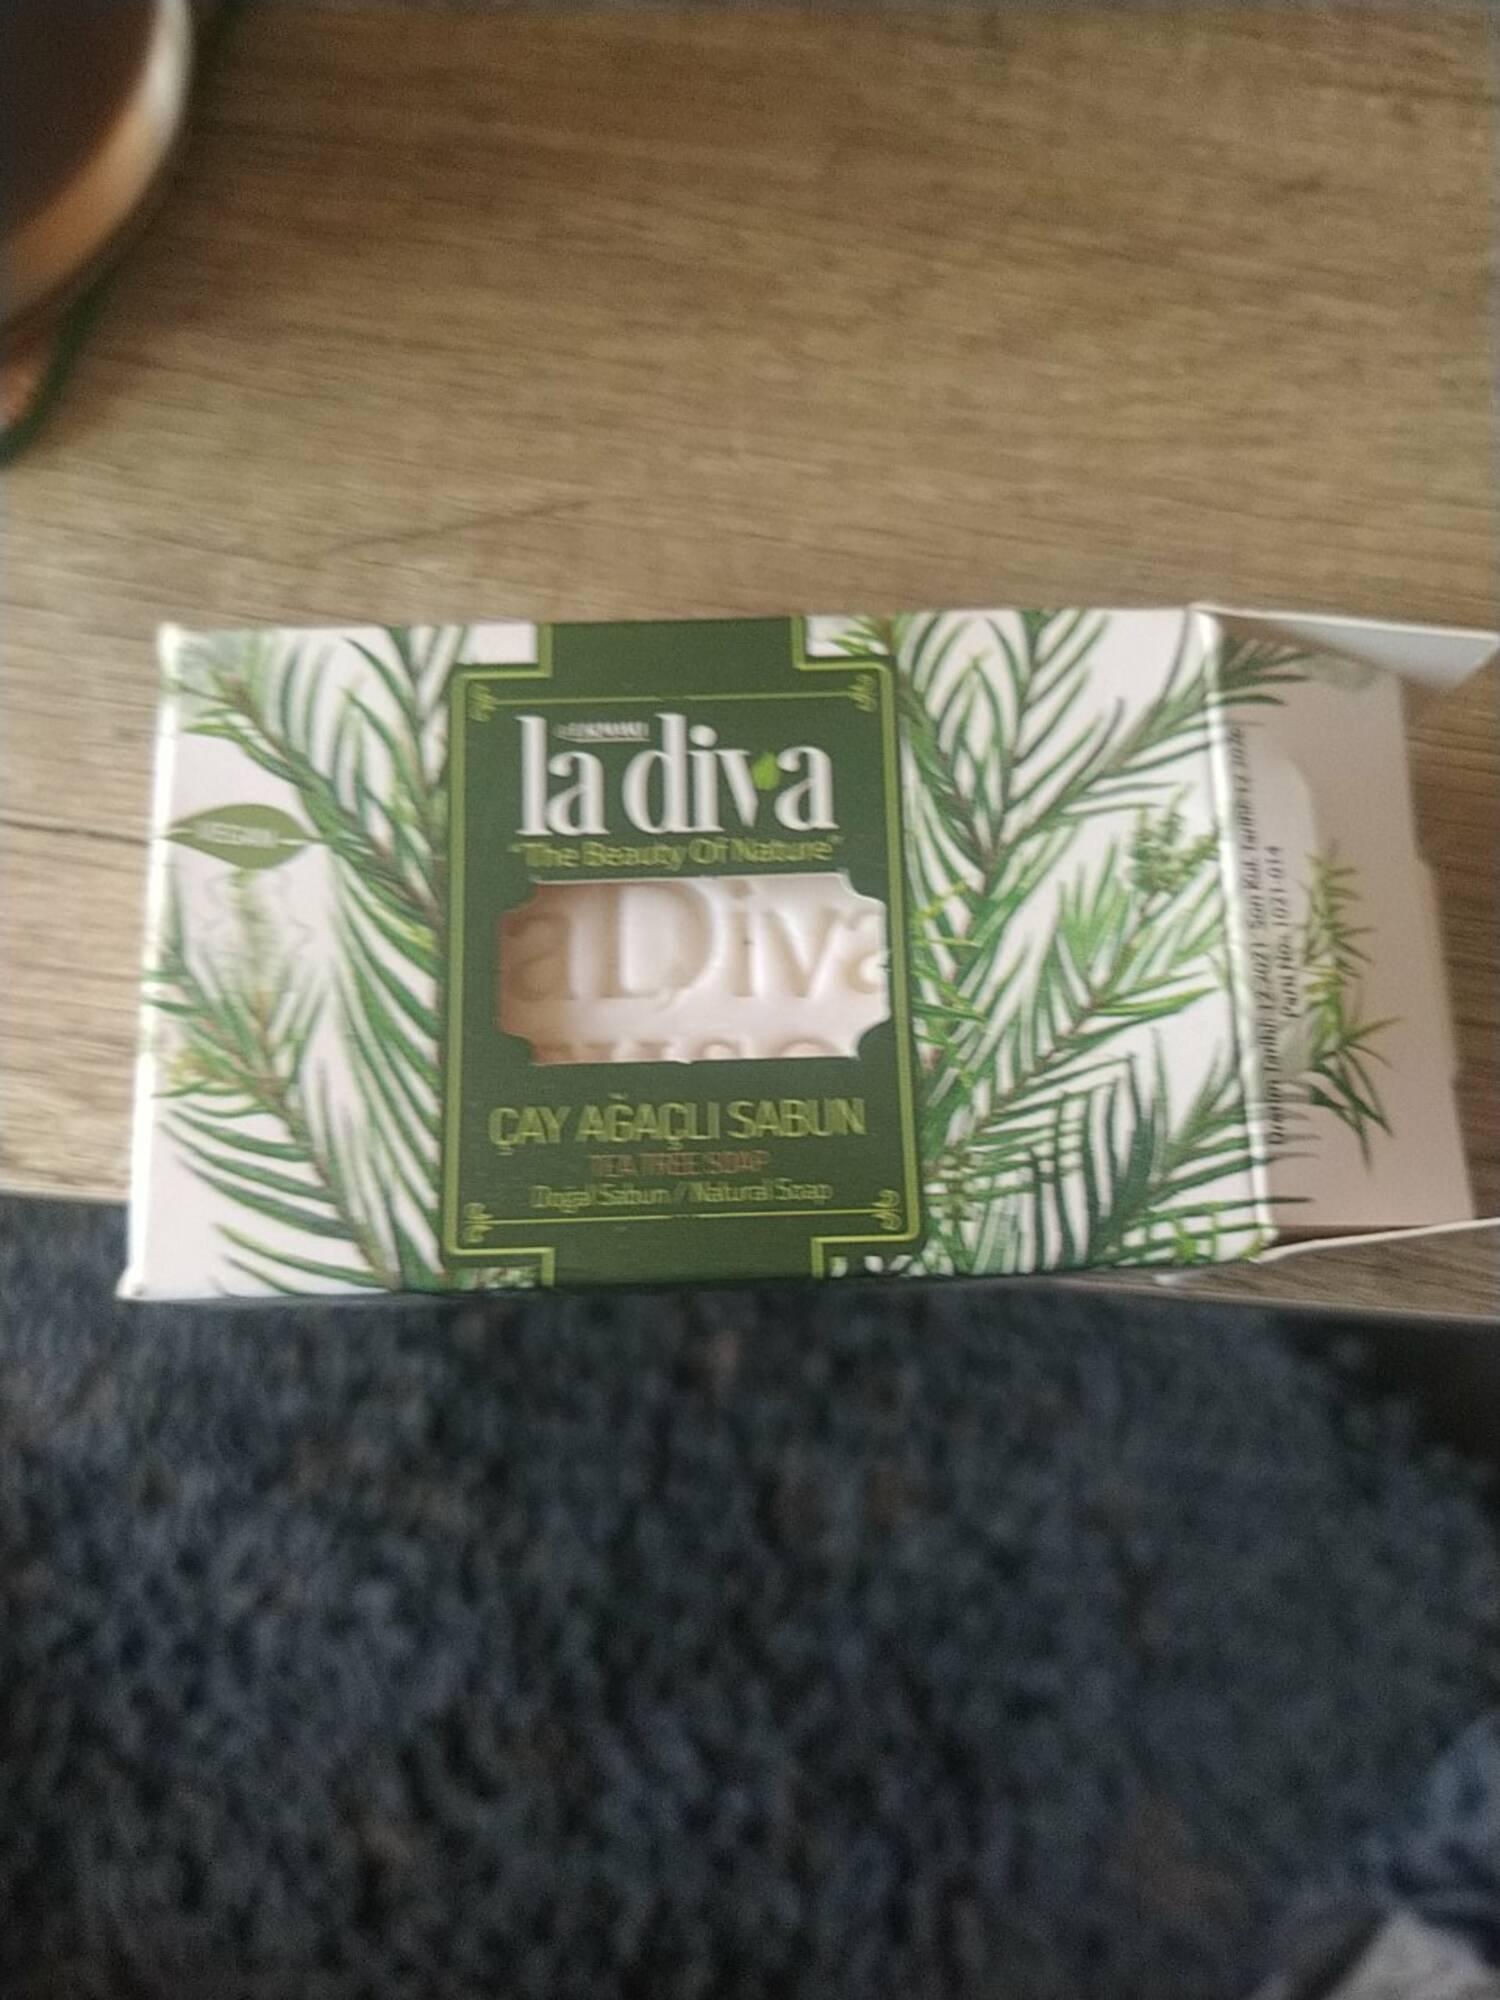 LA DIVA - Tea tree soap - Natural soap